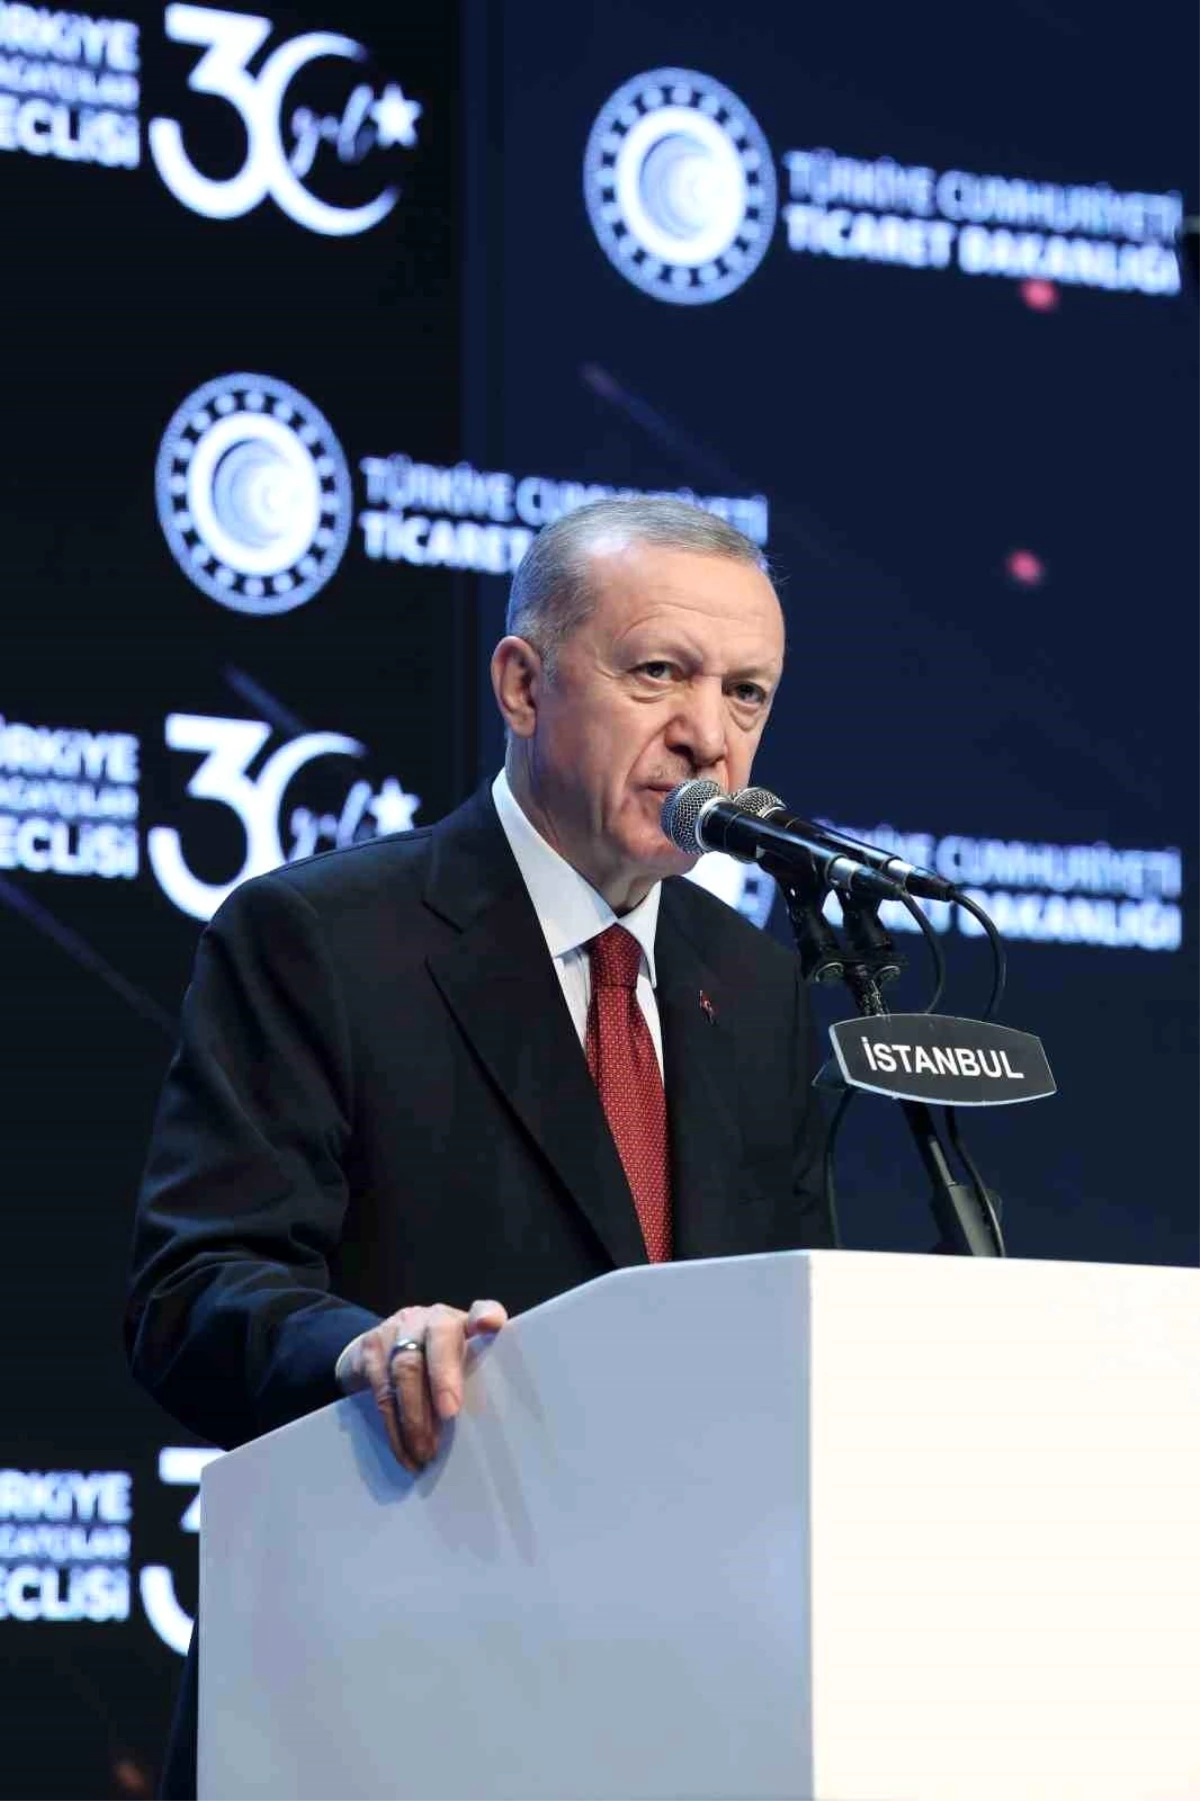 Cumhurbaşkanı Recep Tayyip Erdoğan: "Türkiye OECD ülkeleri arasında ihracatını en hızlı artıran üçüncü ülke oldu."